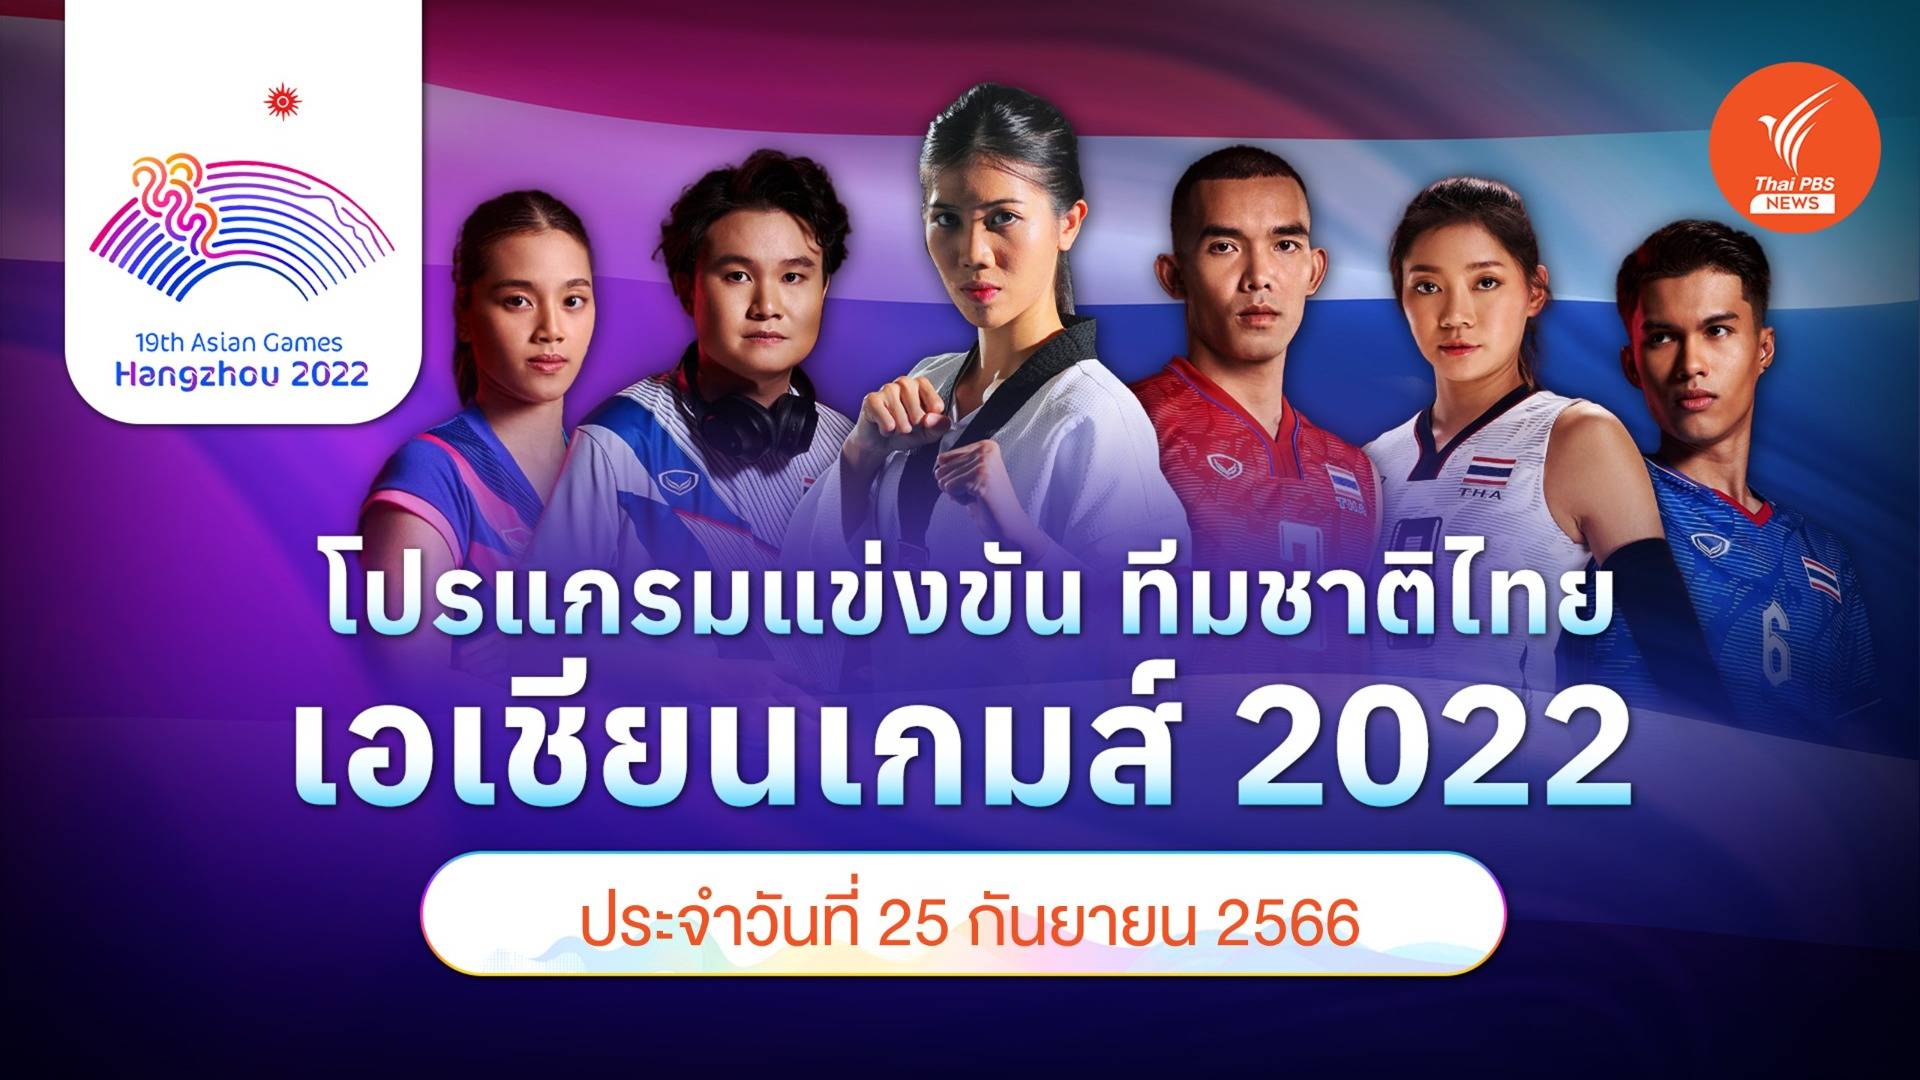 โปรแกรมการแข่งขัน เอเชียนเกมส์ 2022 ทัพนักกีฬาไทย วันที่ 25 ก.ย.66